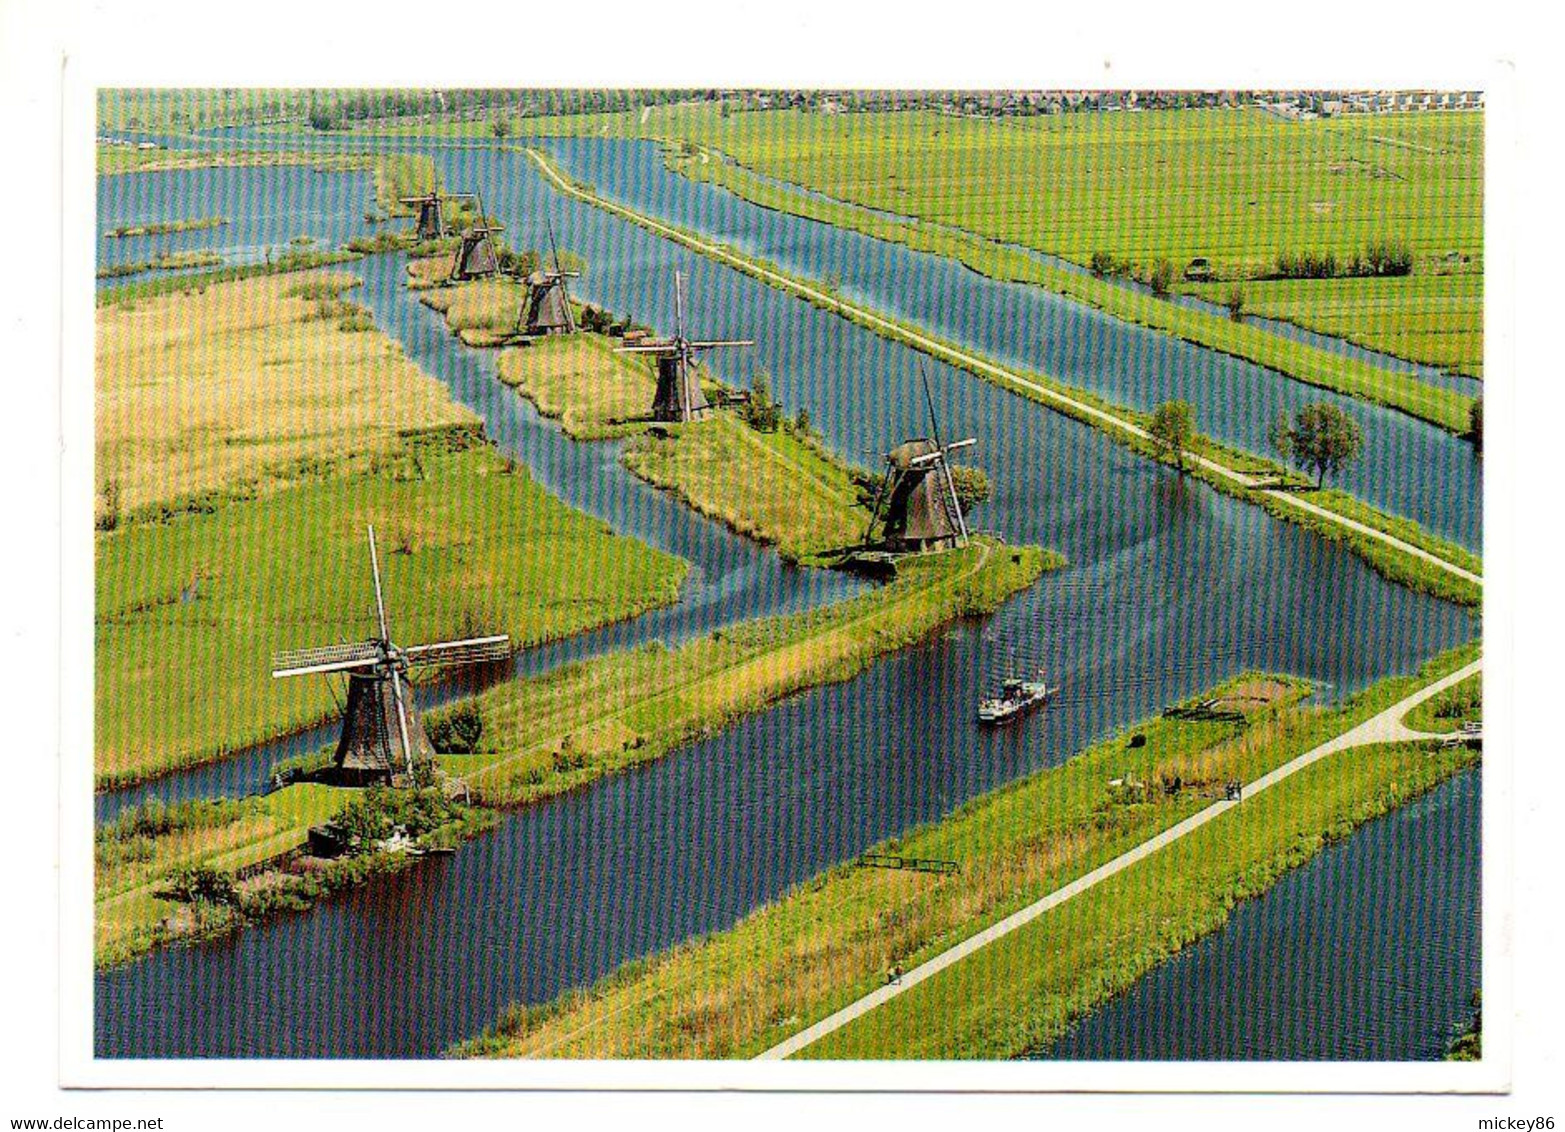 1999--Vue Aérienne D'un Paysage De Moulins à Vent Aux Pays-Bas ....timbre...cachet.......à Saisir - Moulins